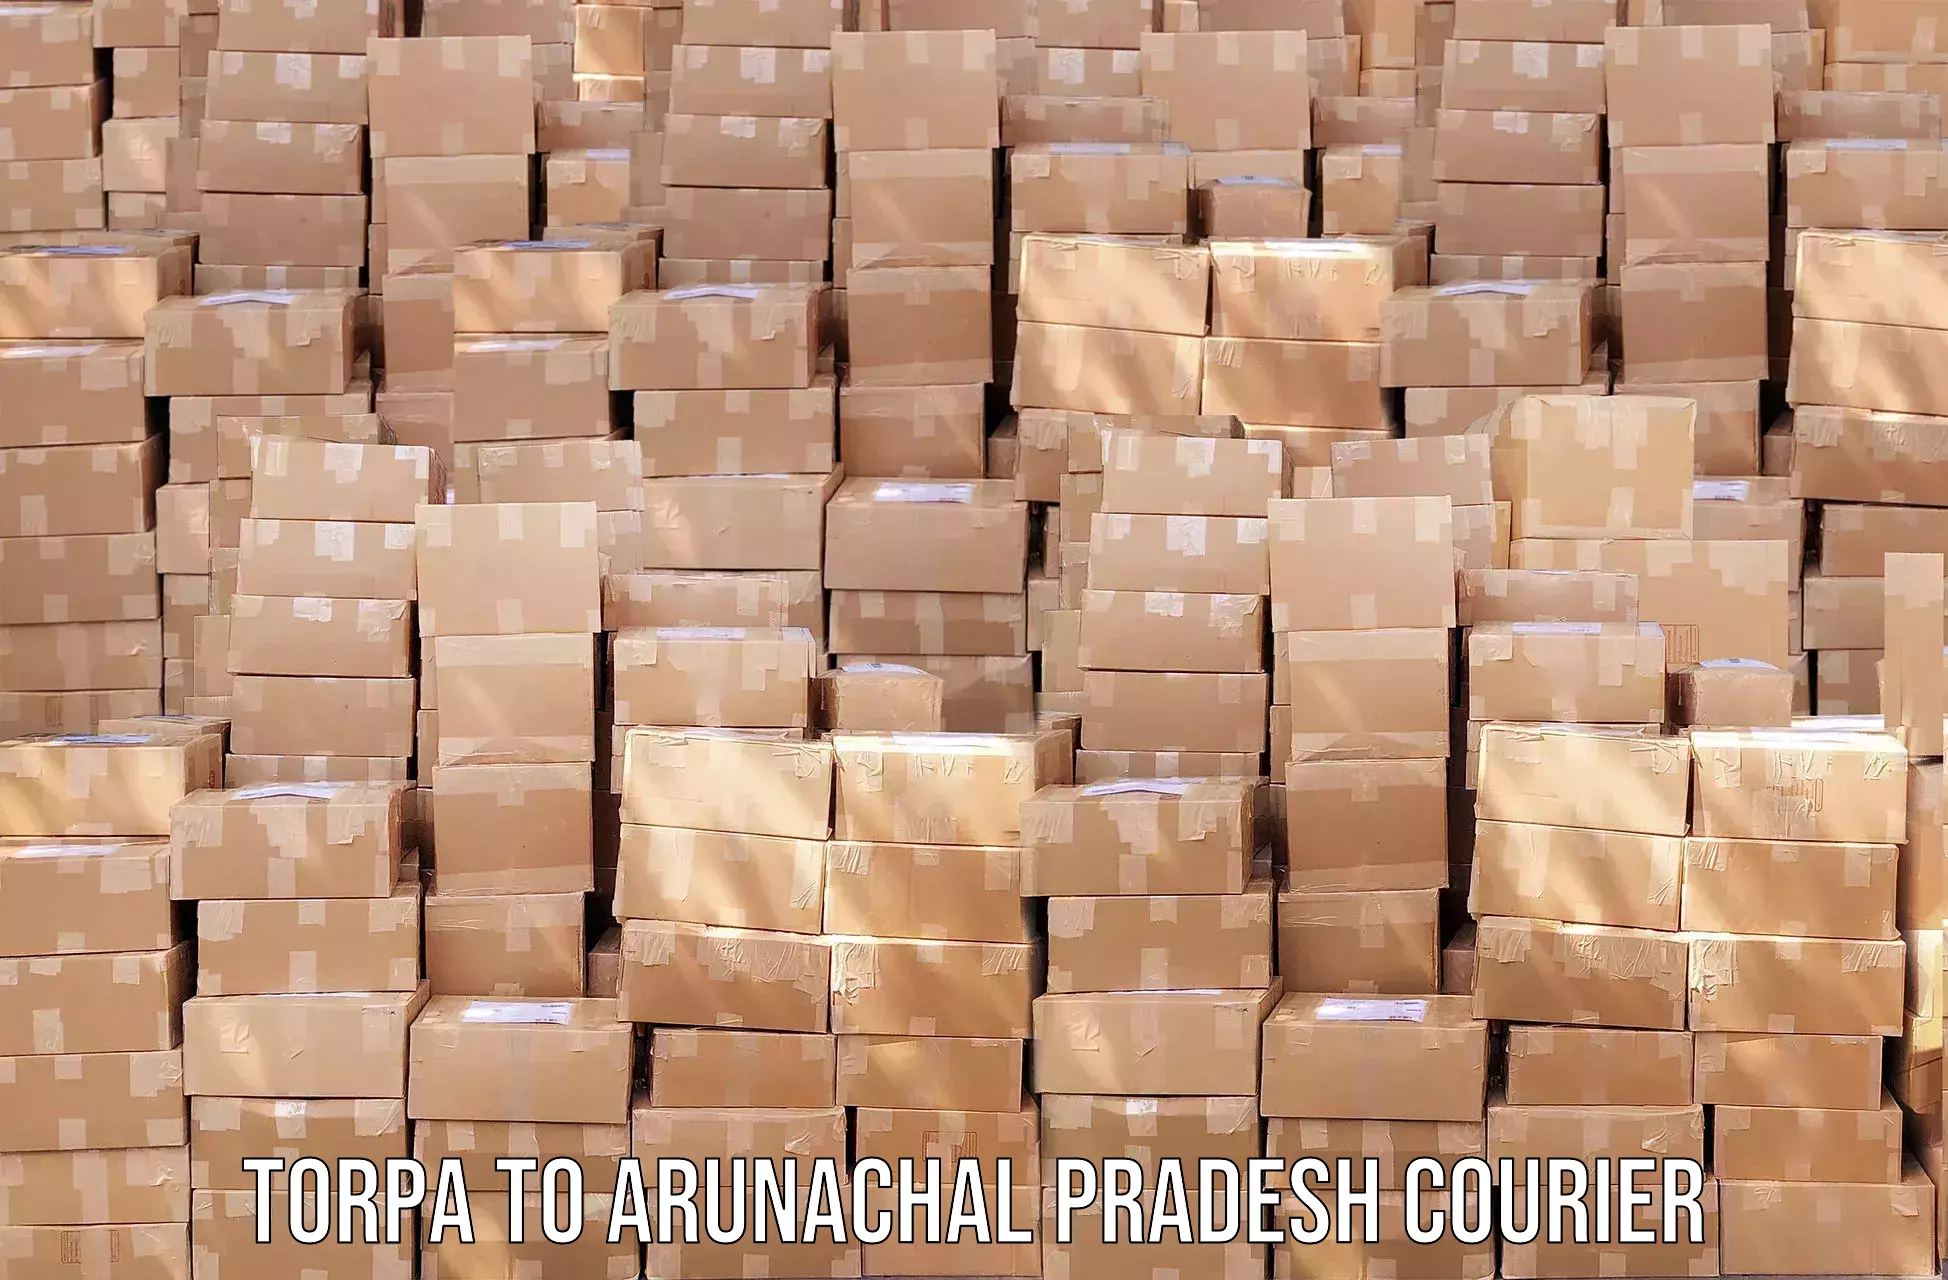 Efficient freight service Torpa to Arunachal Pradesh